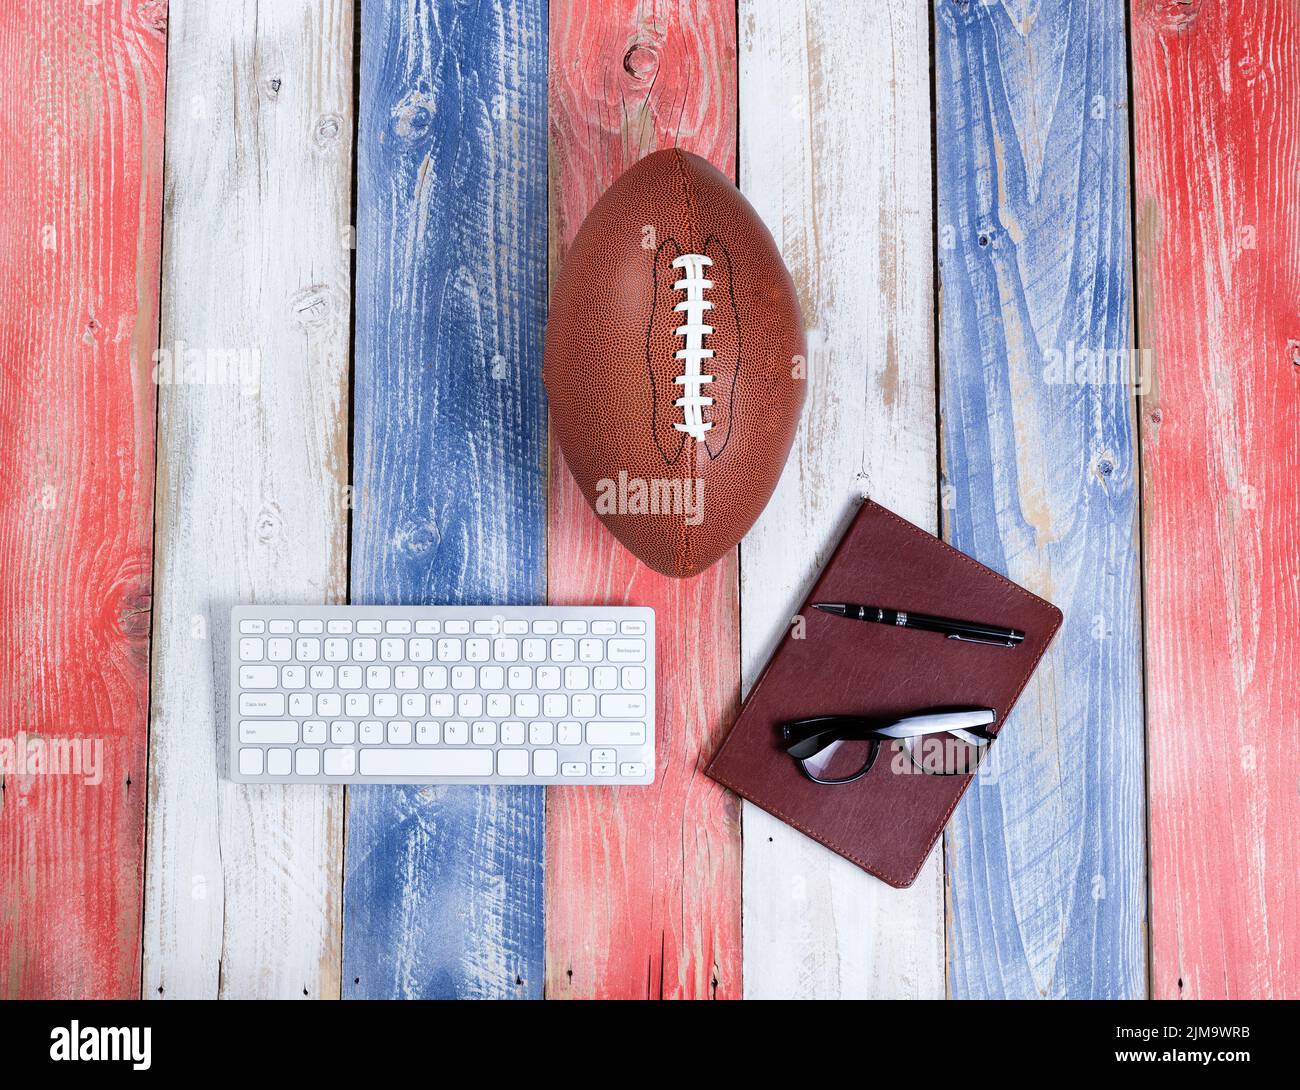 Analizando el fútbol americano para la temporada en tablas rústicas pintadas en colores nacionales de EE.UU Foto de stock